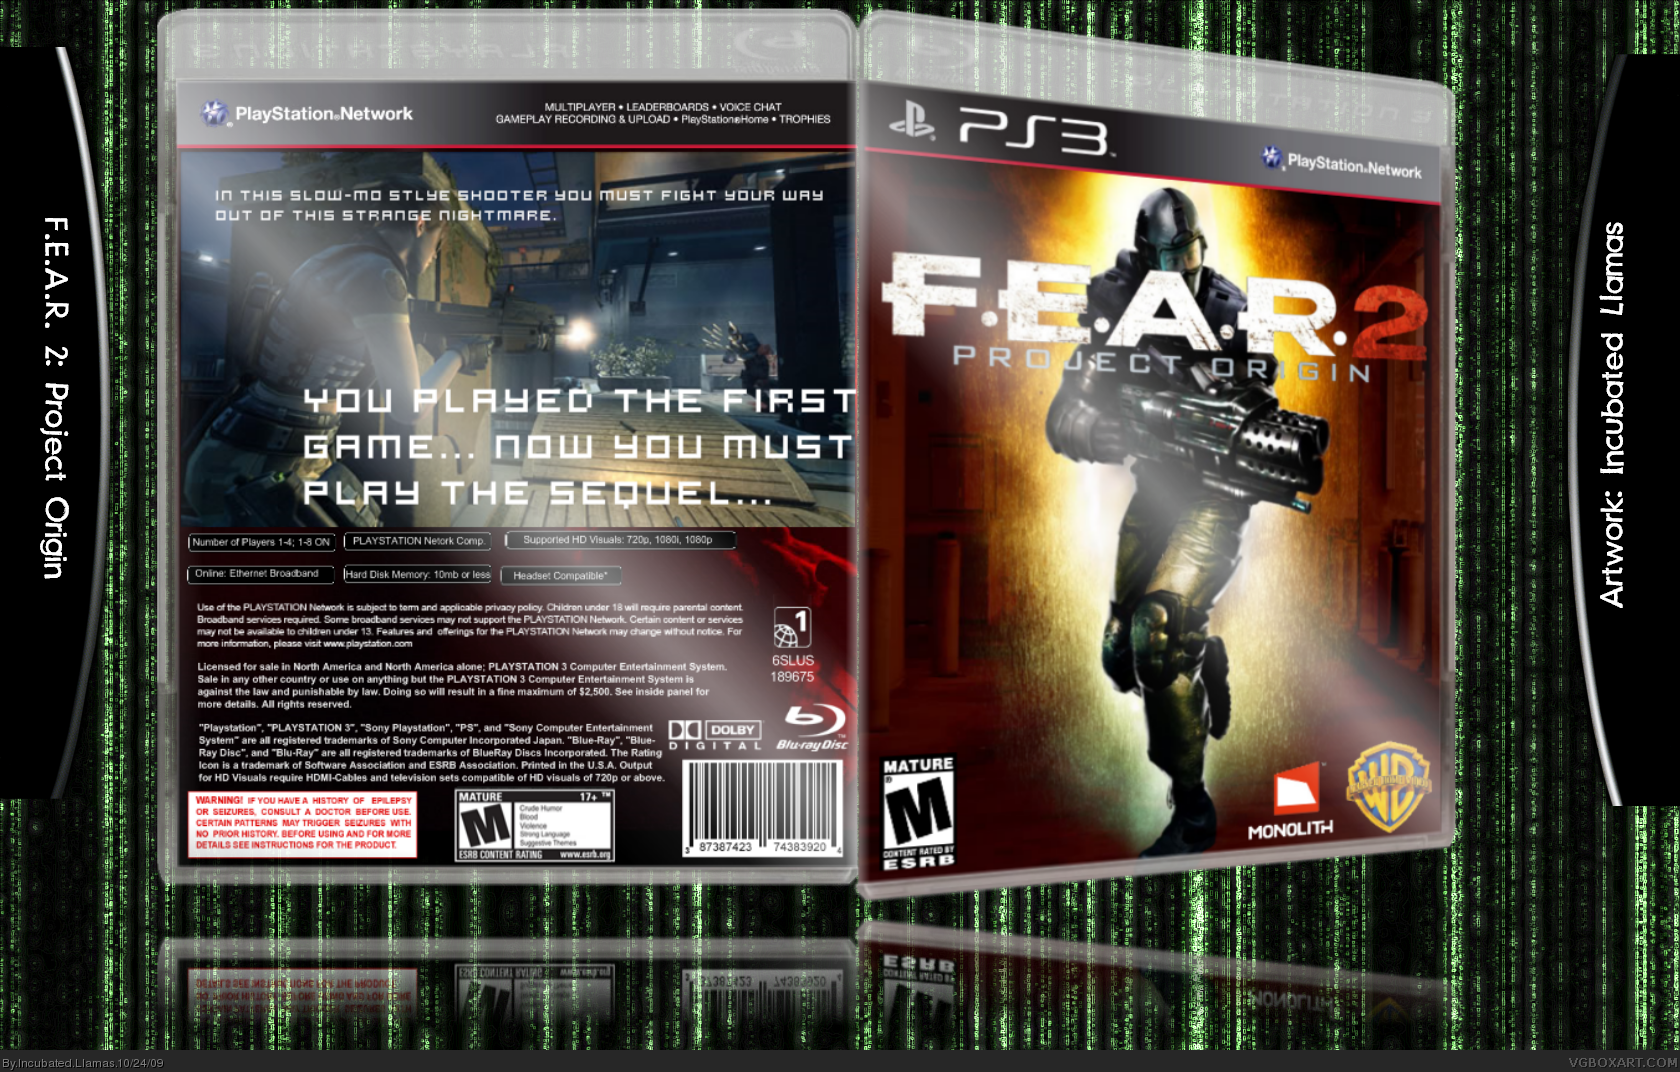 F.E.A.R. 2: Project Origin box cover